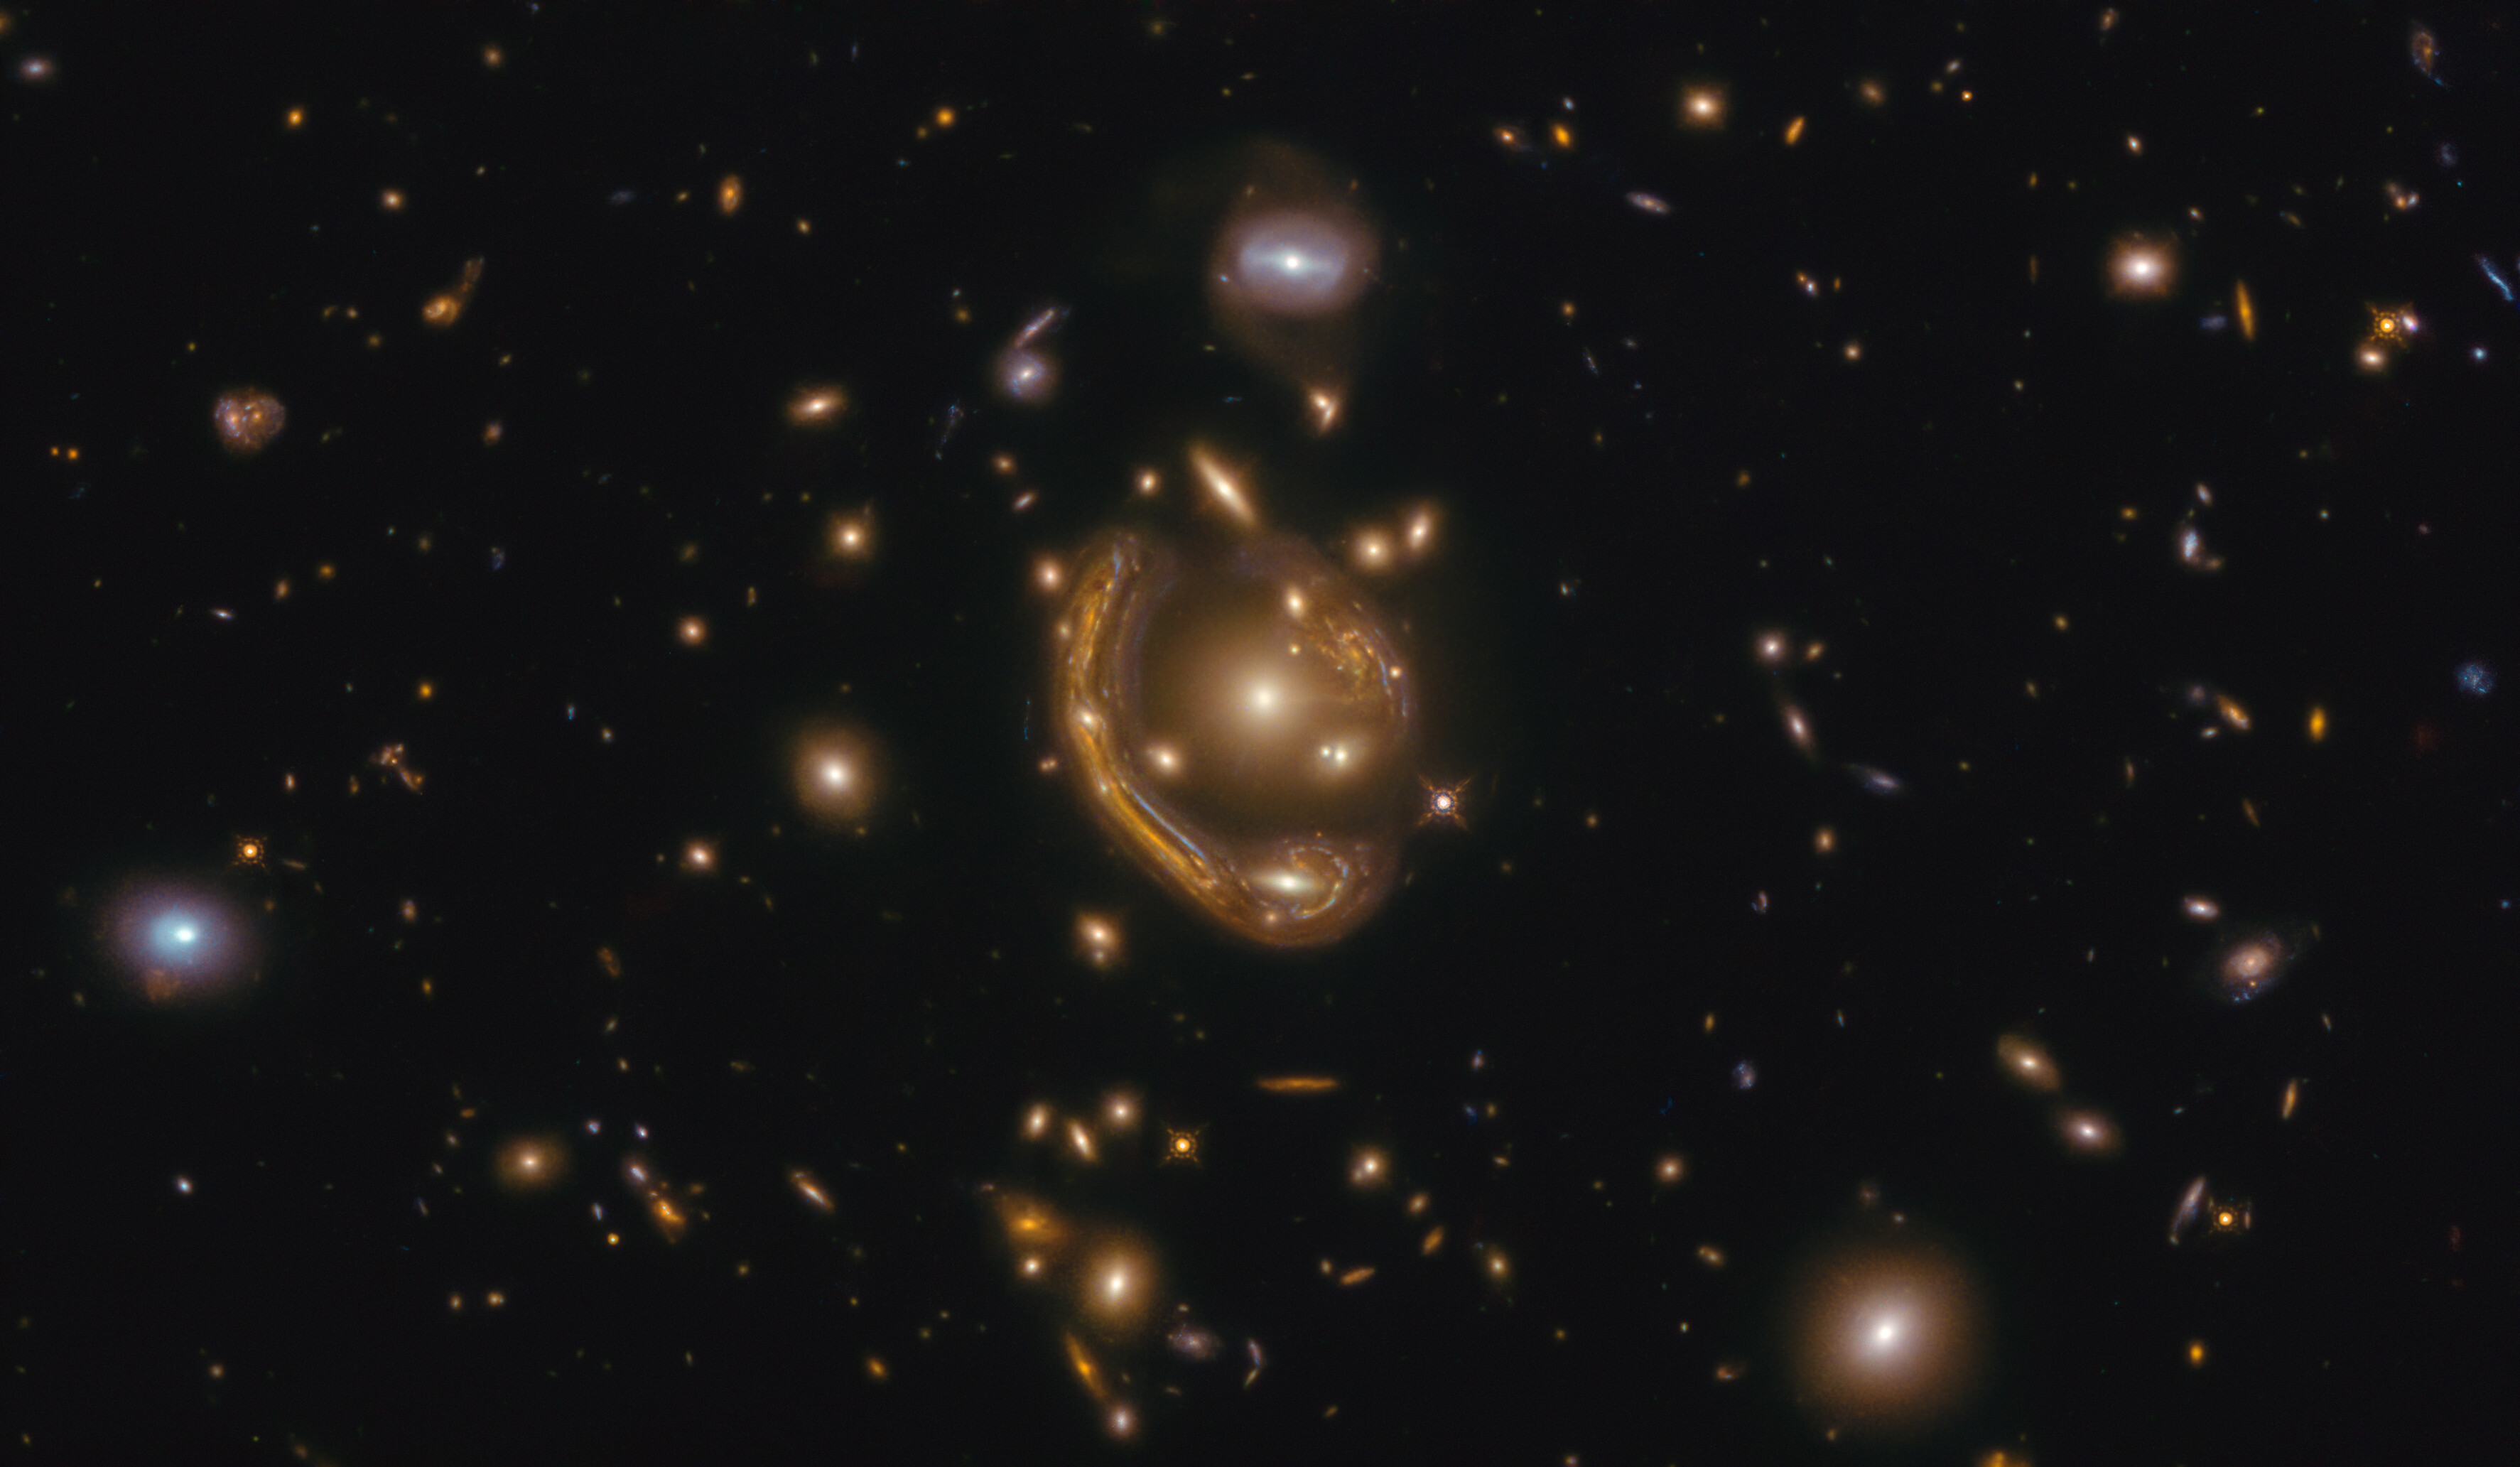 El telescopio Hubble captó uno de los “anillos de Einstein” más grandes y completos jamás vistos